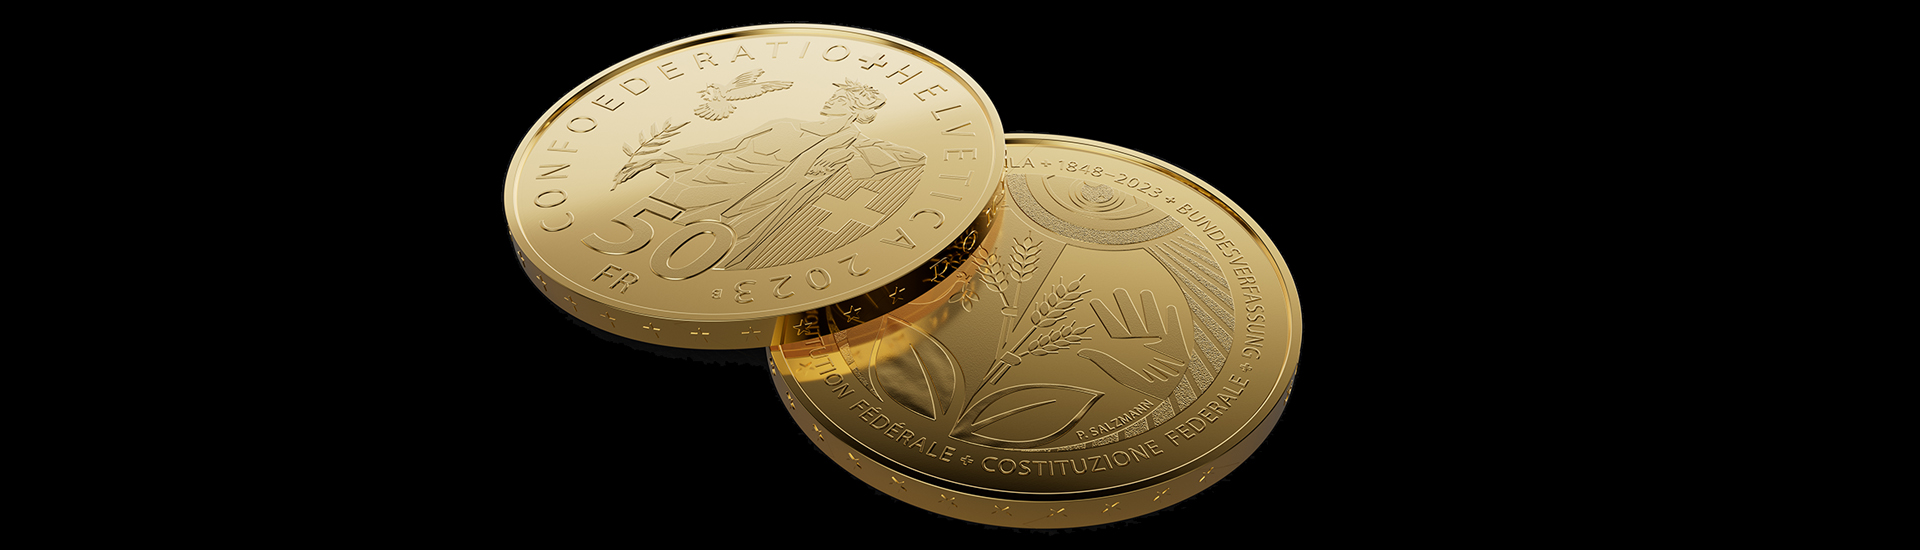 Moneta d'oro «175 anni di Costituzione federale»